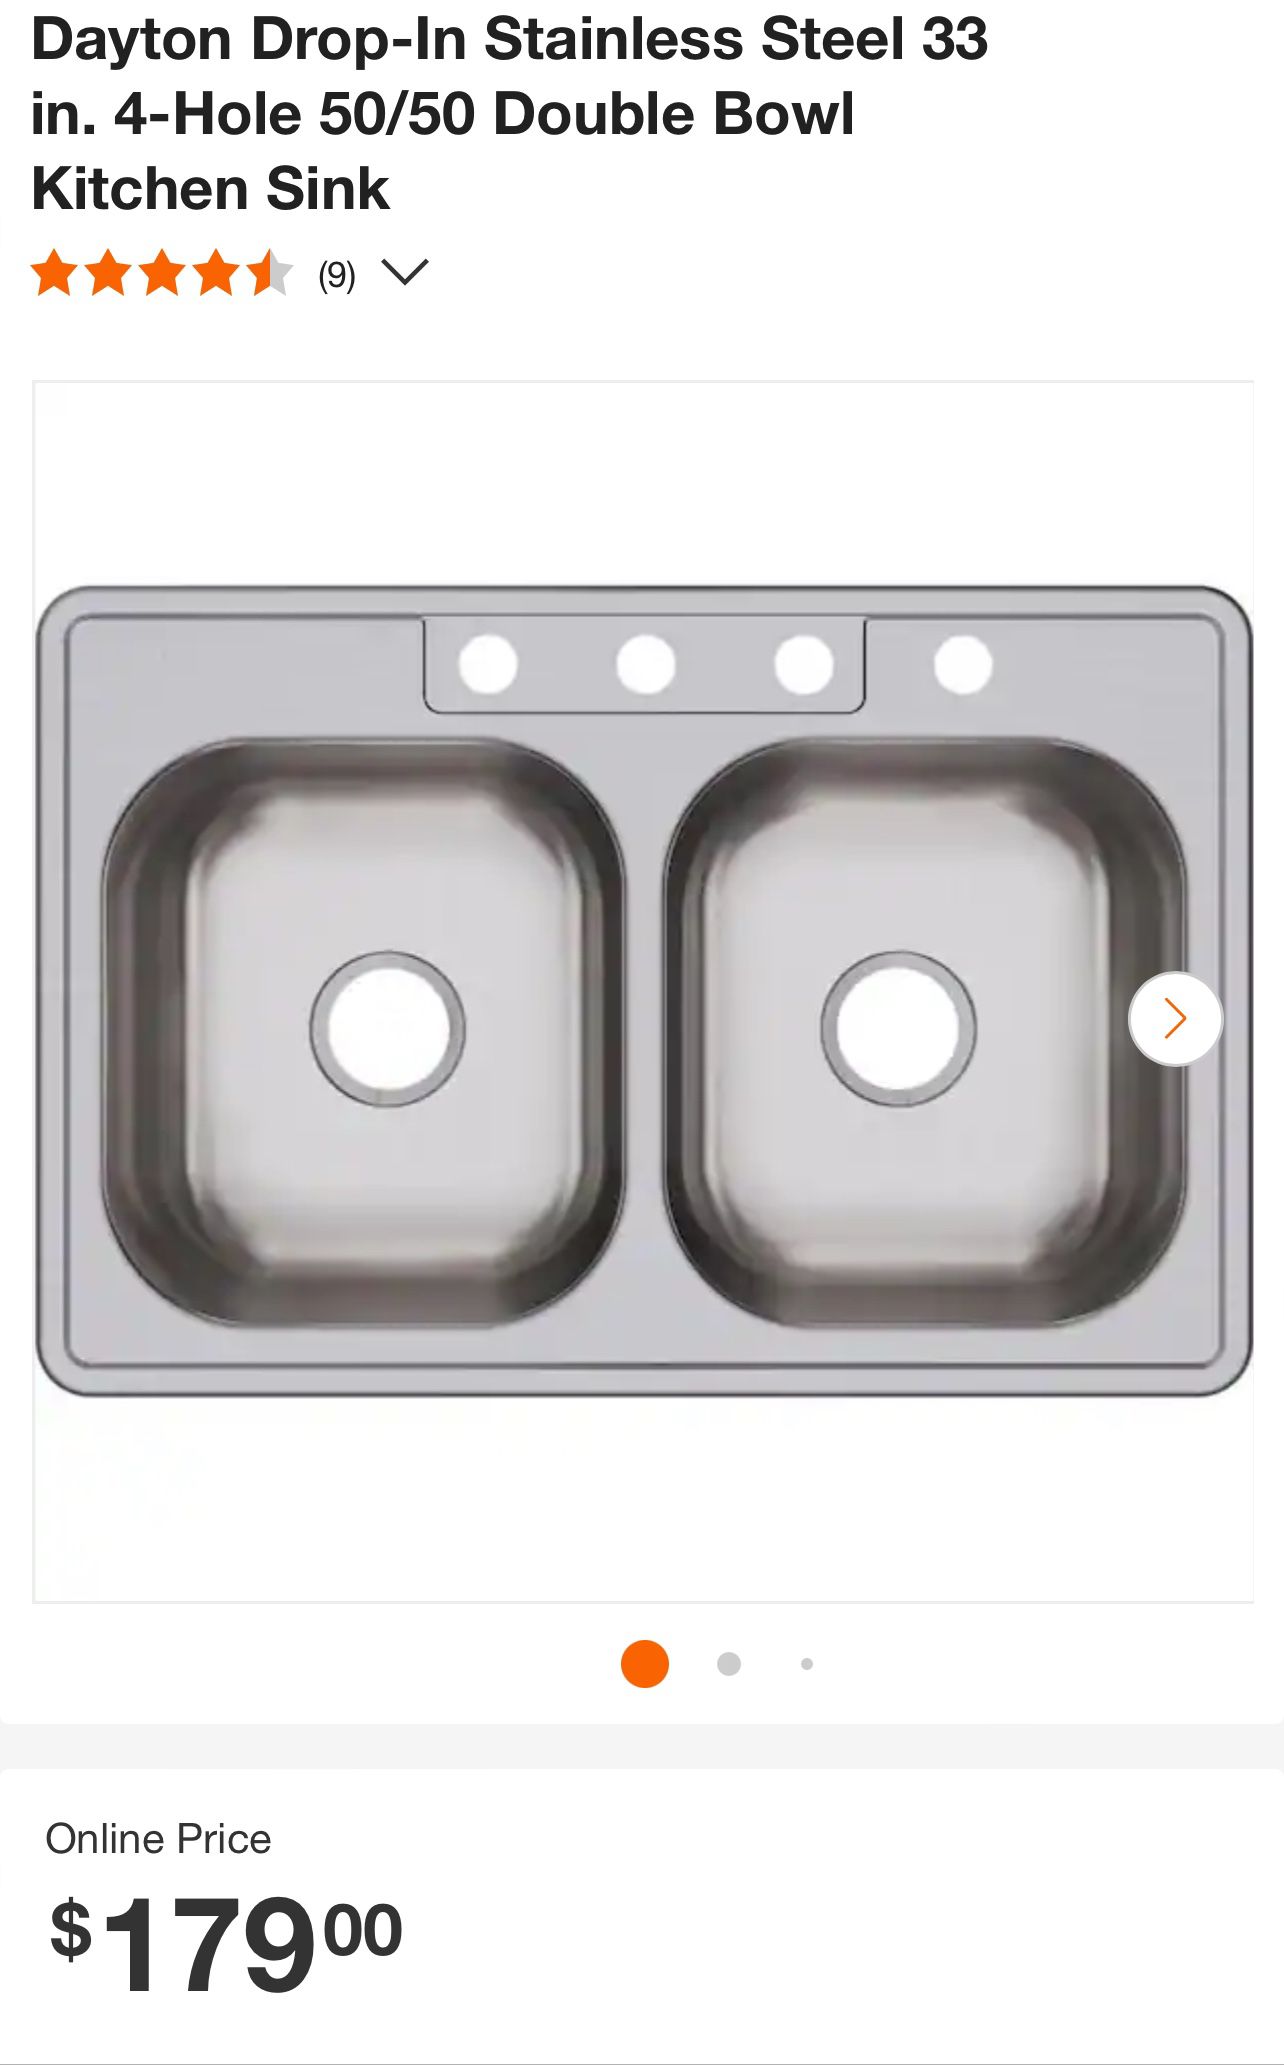 Double Bowl Kitchen Sink Elkay Dayton Drop-In Stainless Steel 33 in. 4-Hole 50/50